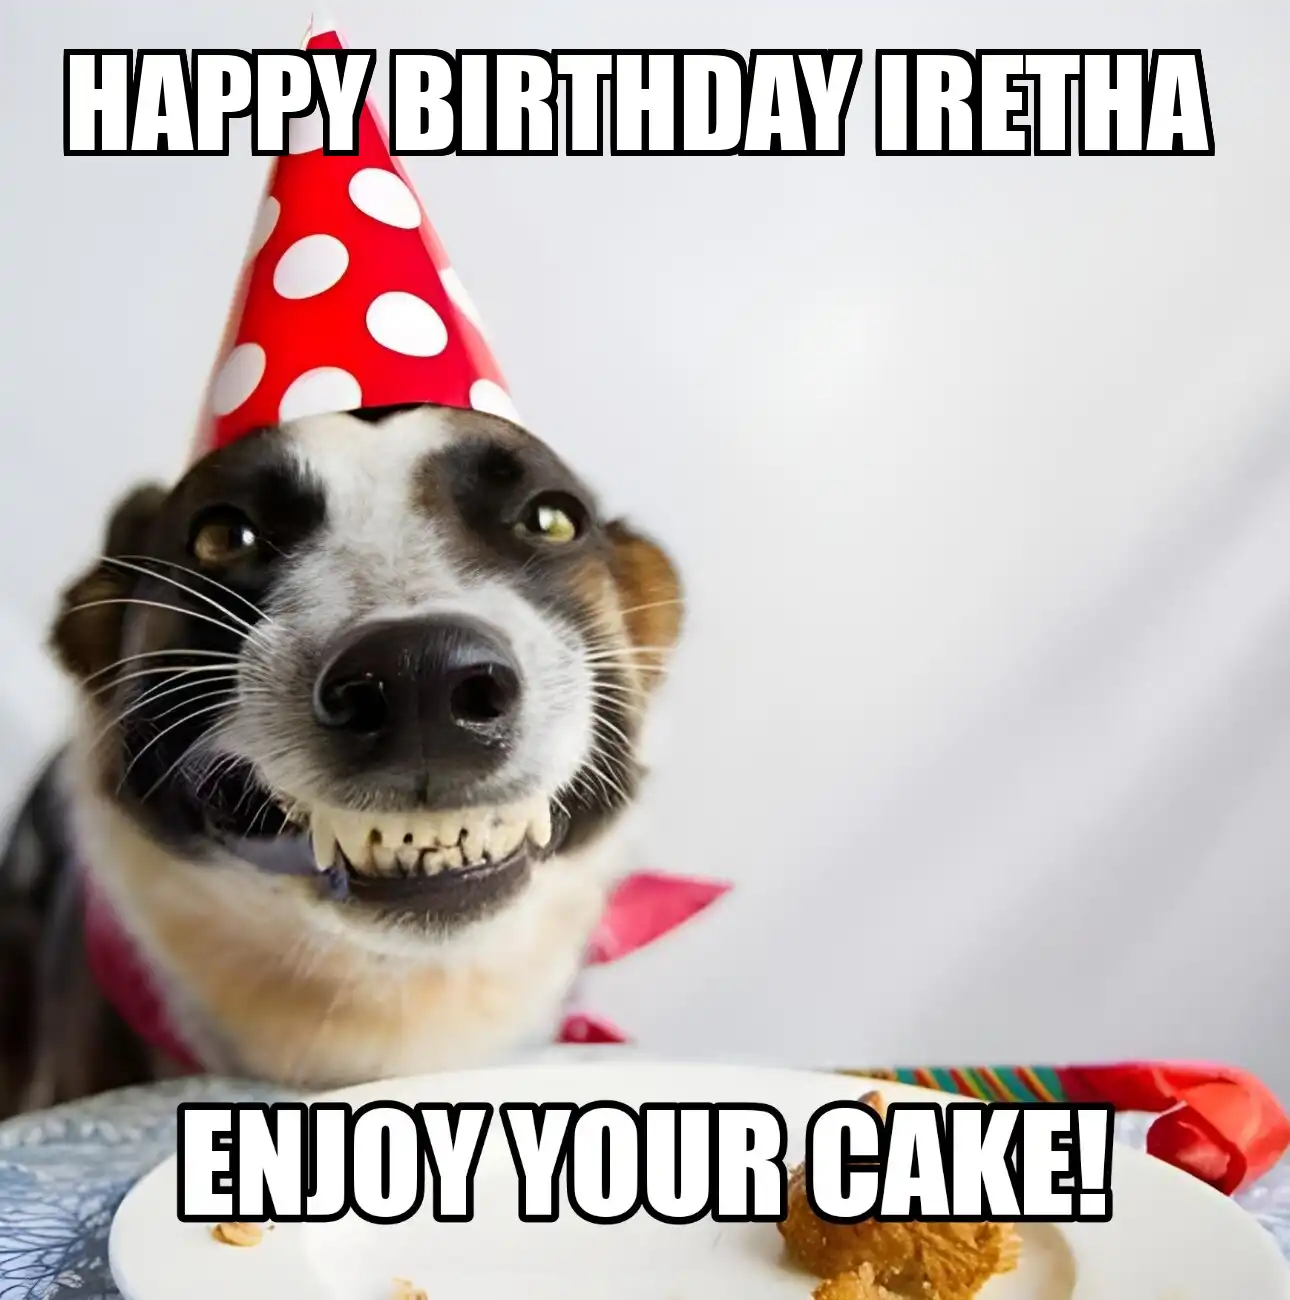 Happy Birthday Iretha Enjoy Your Cake Dog Meme